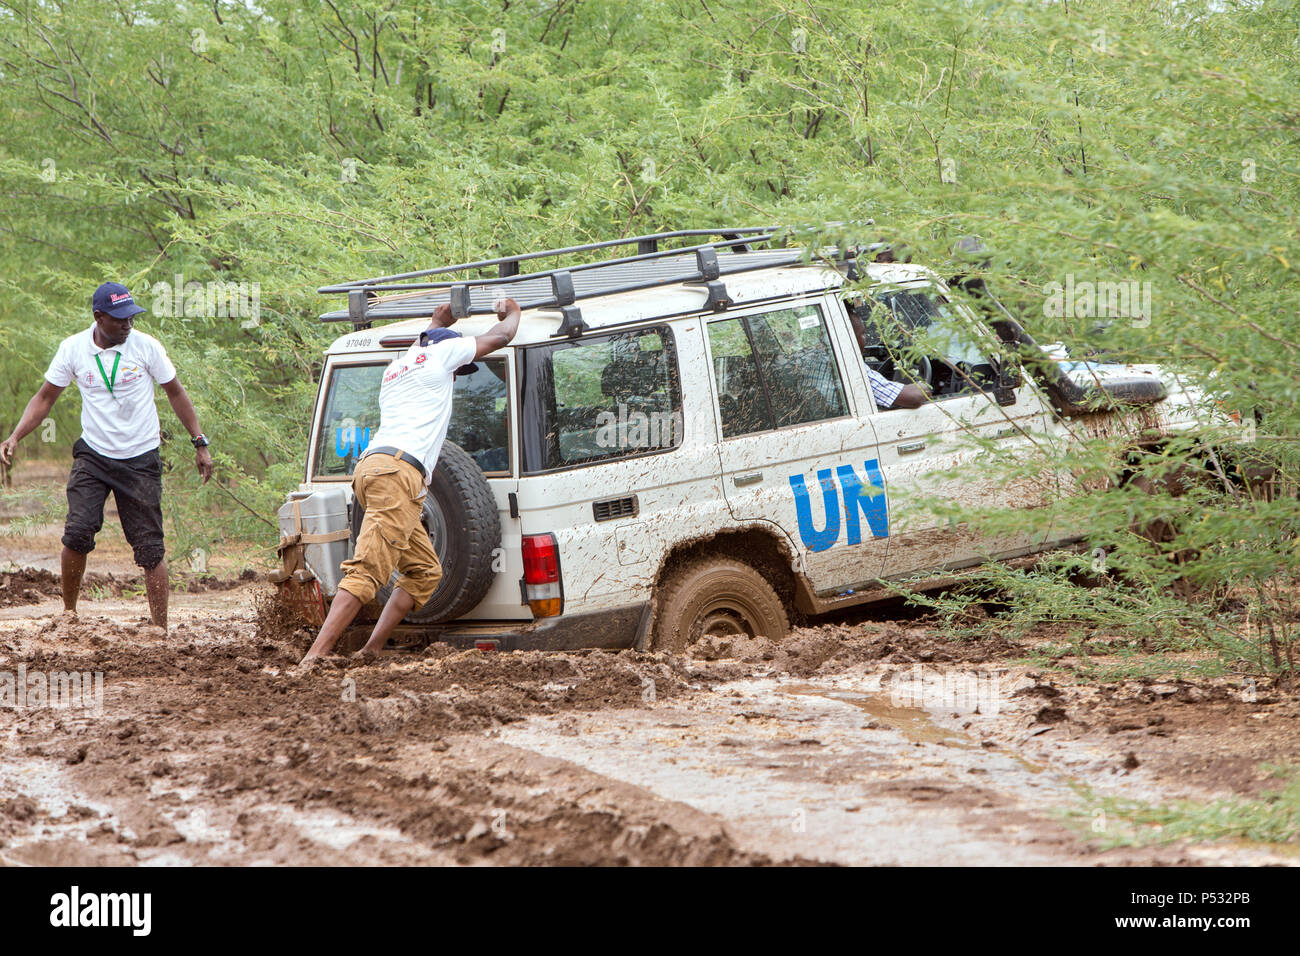 KAKUMA, KENYA - A UN Land Rover has got stuck on a dirt road deep in the mud. Stock Photo